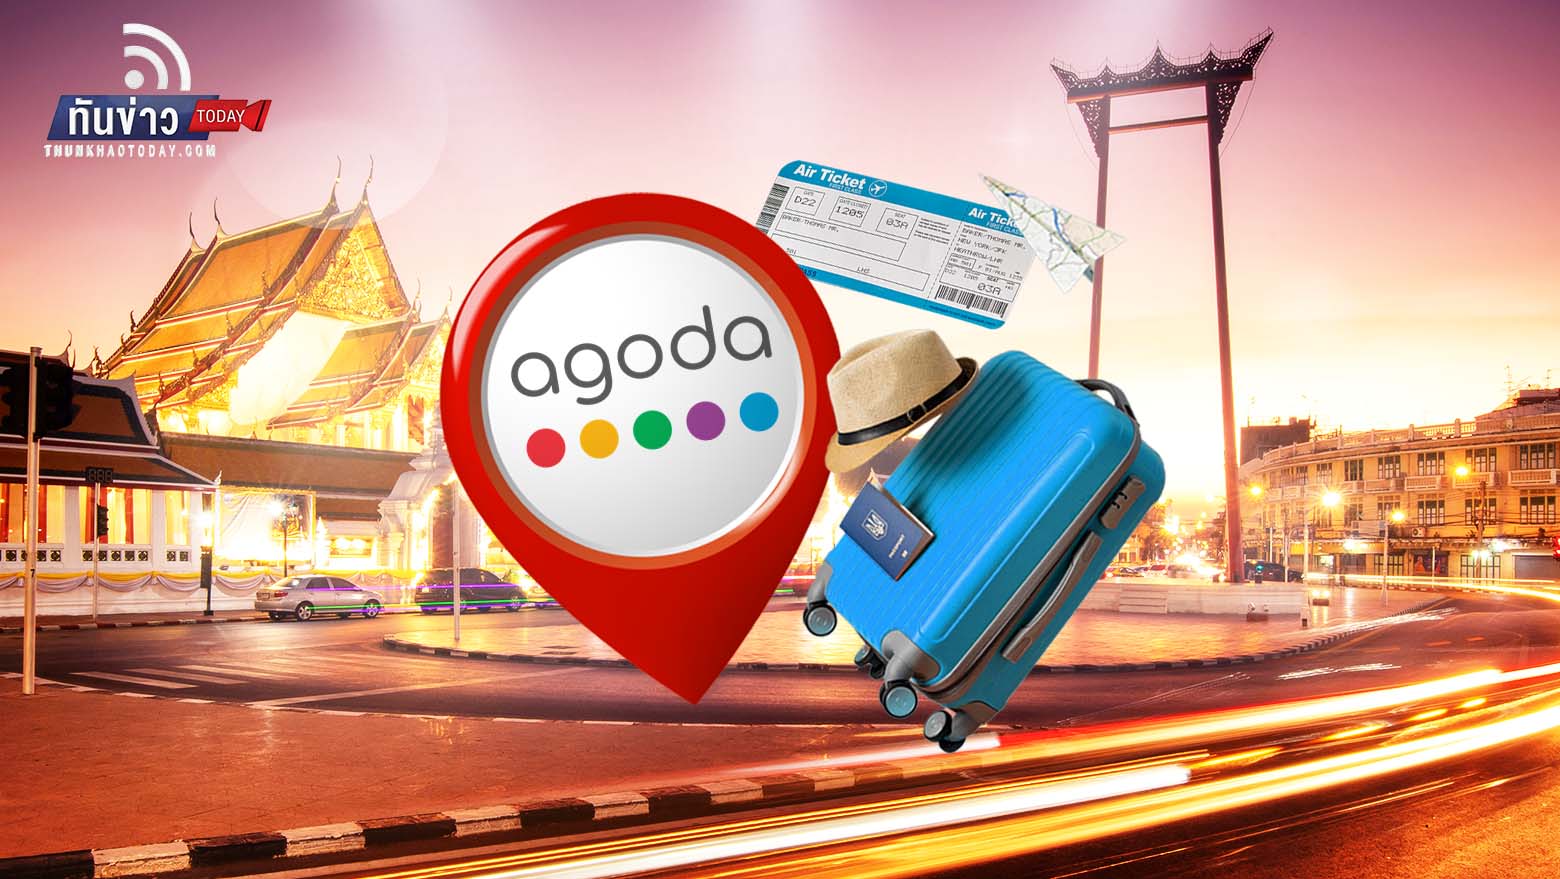 Agoda เผย "กรุงเทพฯ" ติดอันดับ 1 จุดหมายปลายทางยอดนิยม ระดับโลก 2022 นักท่องเที่ยวอยากไปมากที่สุด